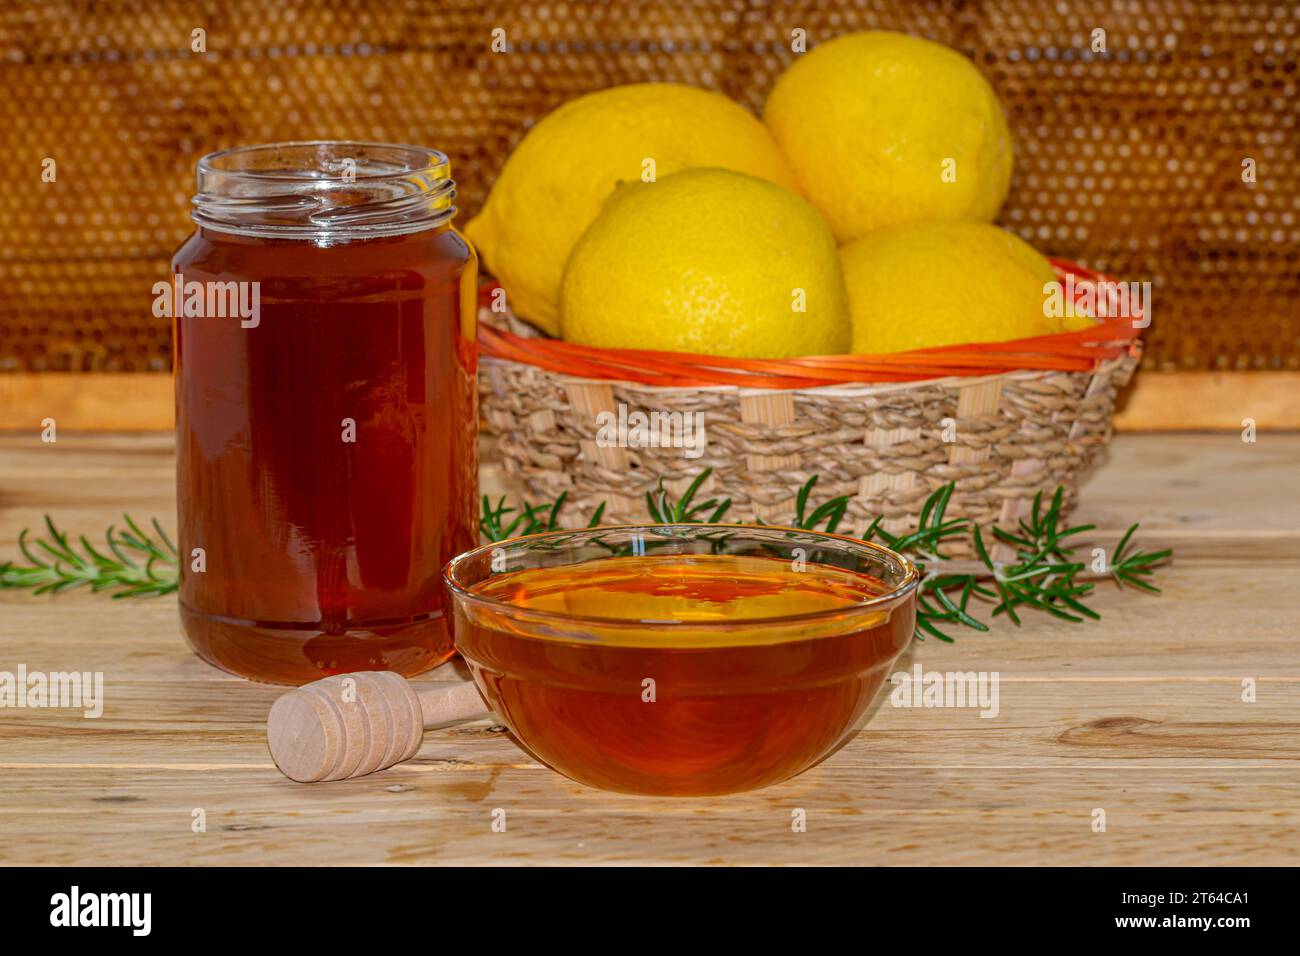 Honigglas ohne Deckel, Spender, eine Schüssel Honig, eine Rosmarinfeder und ein Korb Zitronen auf Holz mit einer echten Wabe im Hintergrund Stockfoto